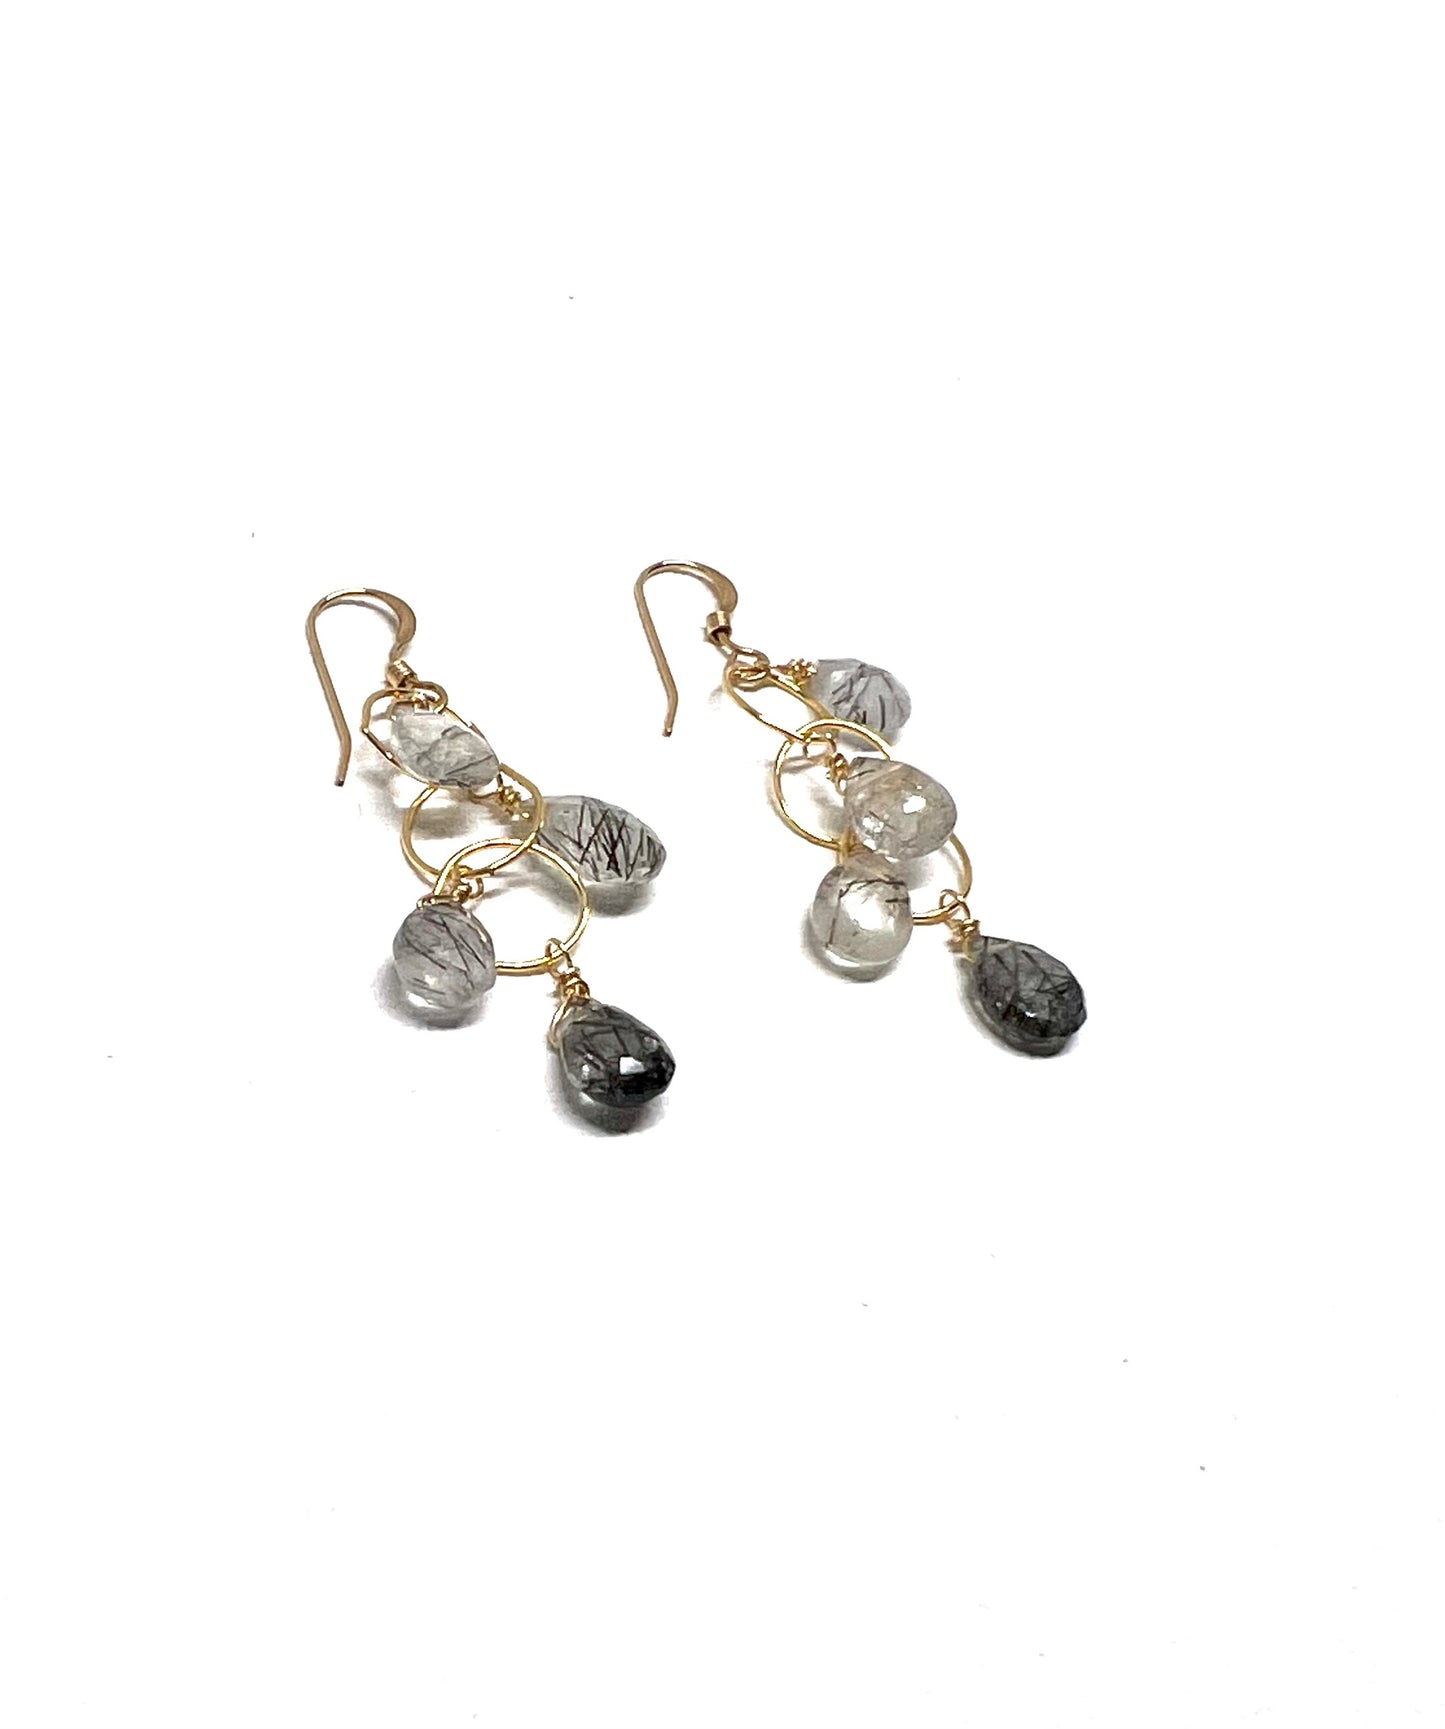 Rutile quartz dropped earrings